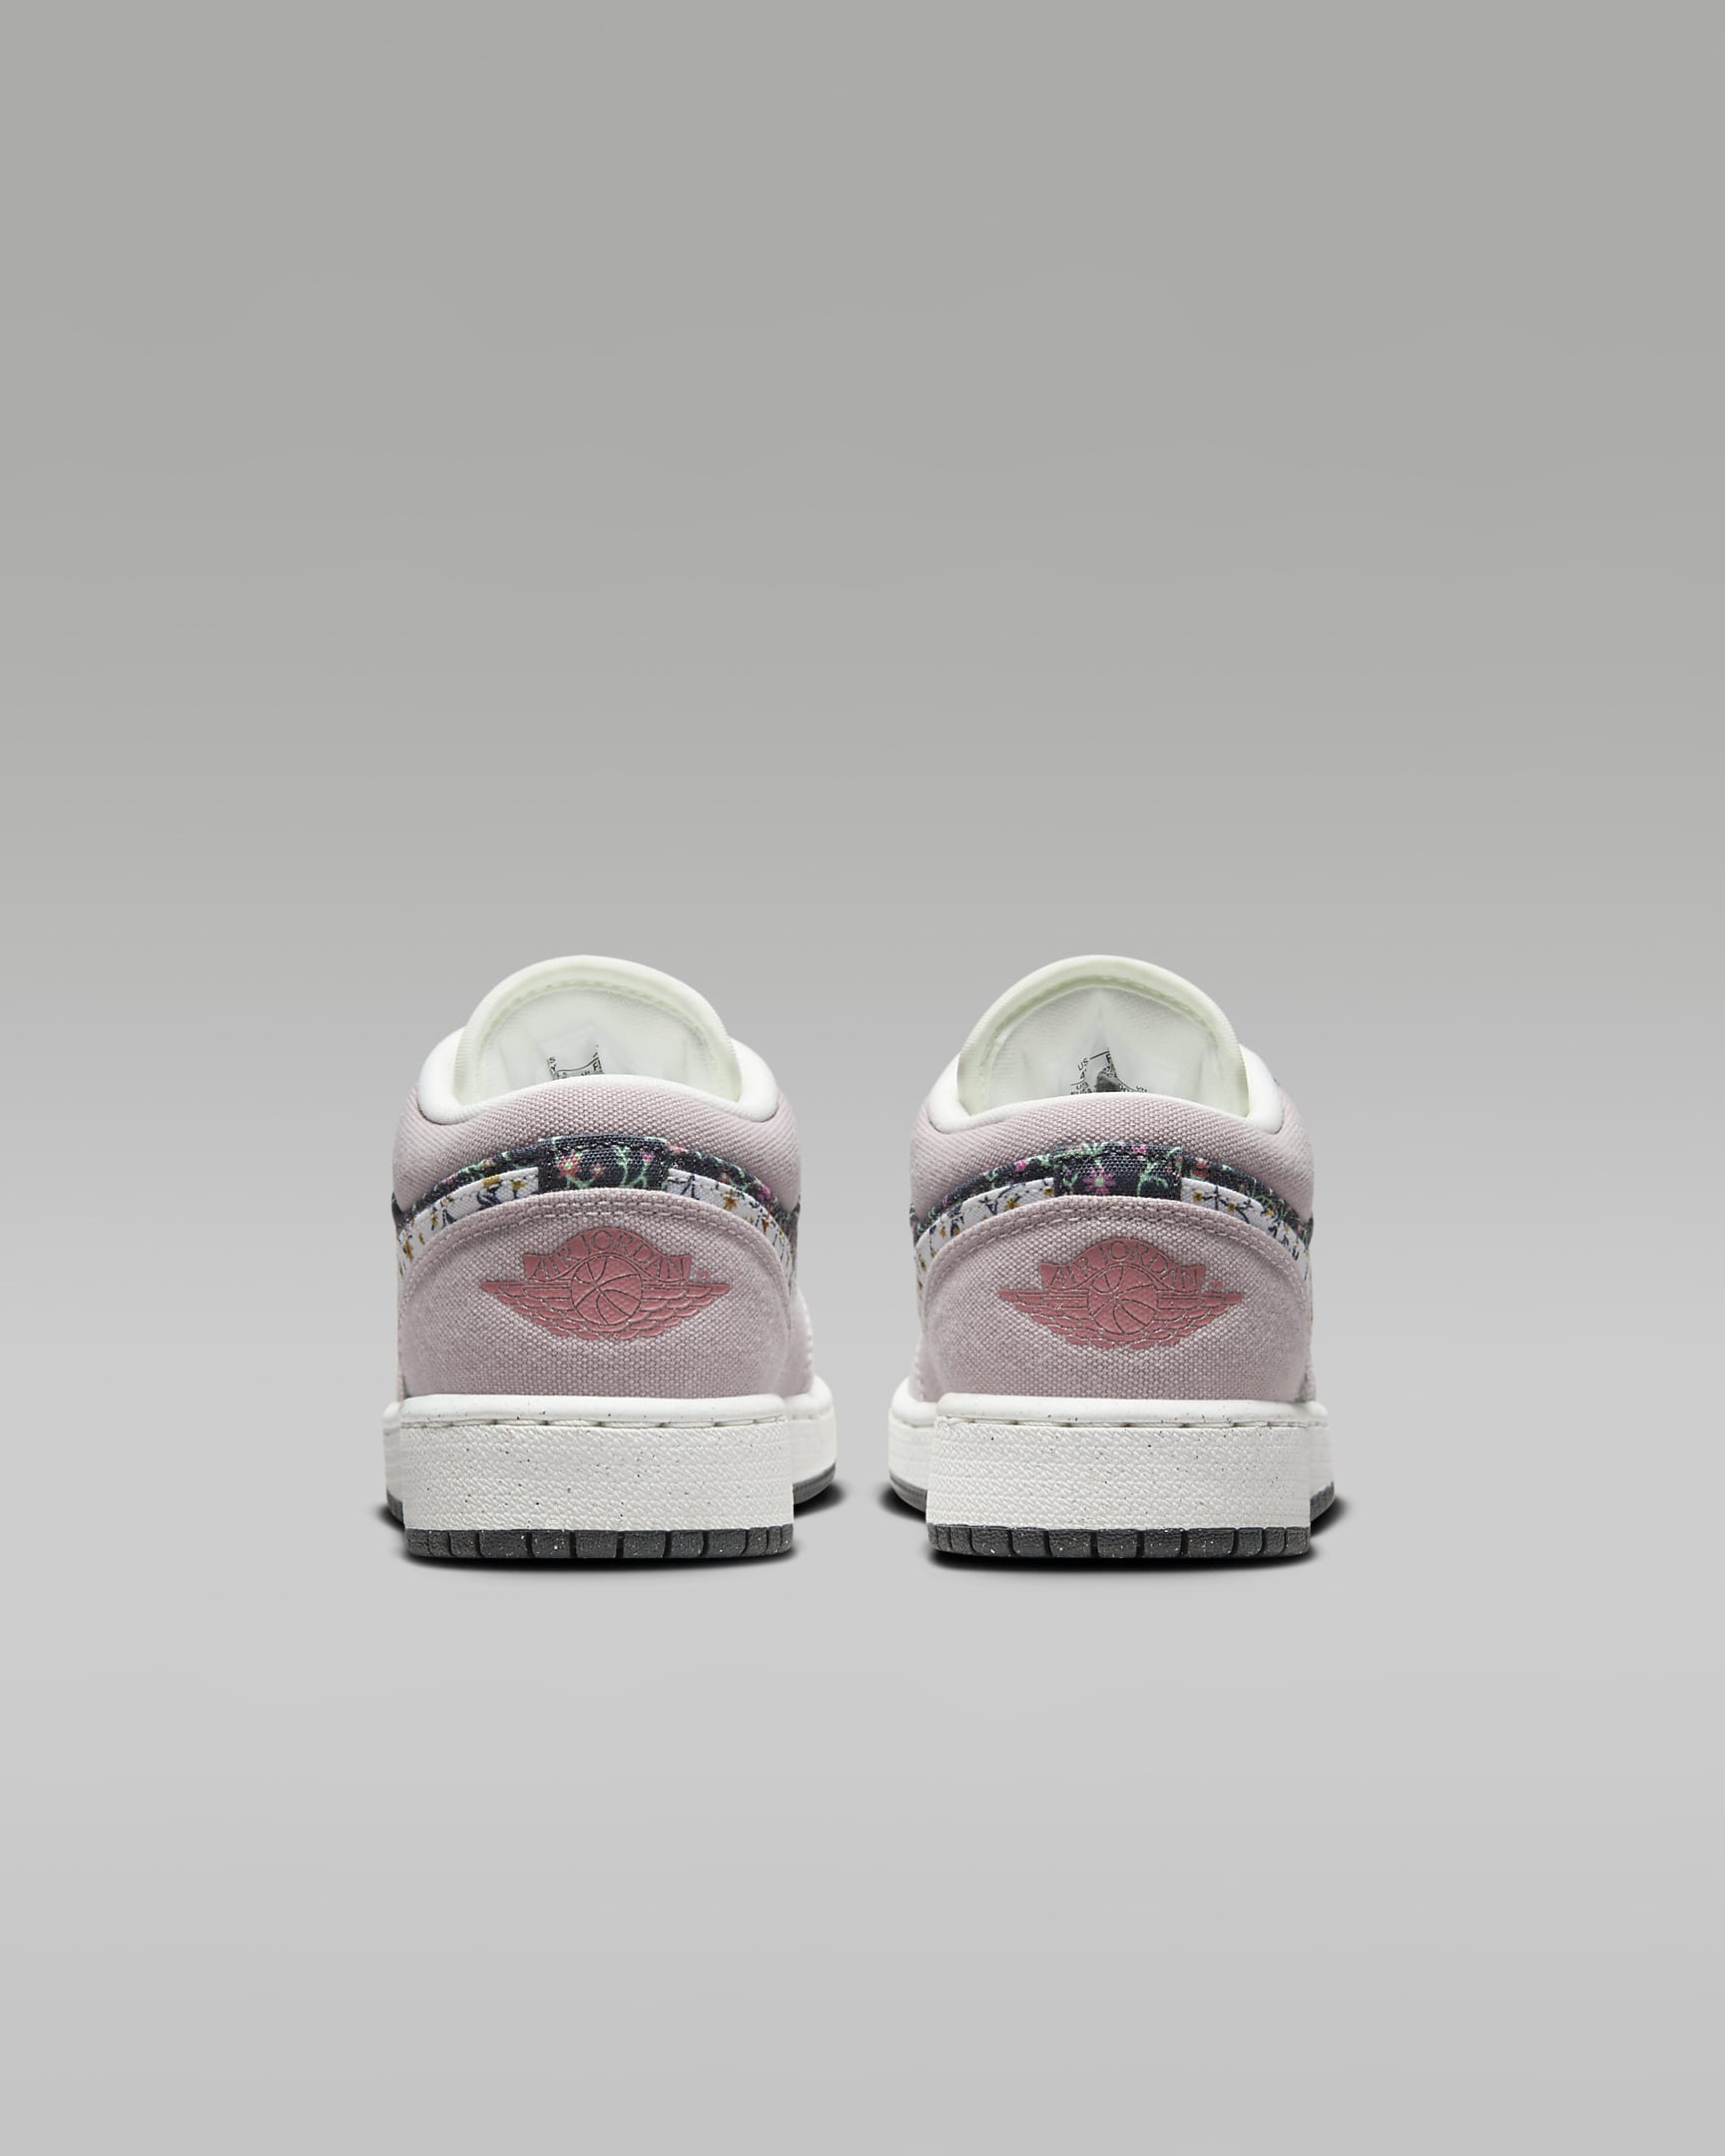 Air Jordan 1 Low SE Older Kids' Shoes - Platinum Violet/Anthracite/Red Stardust/Sail